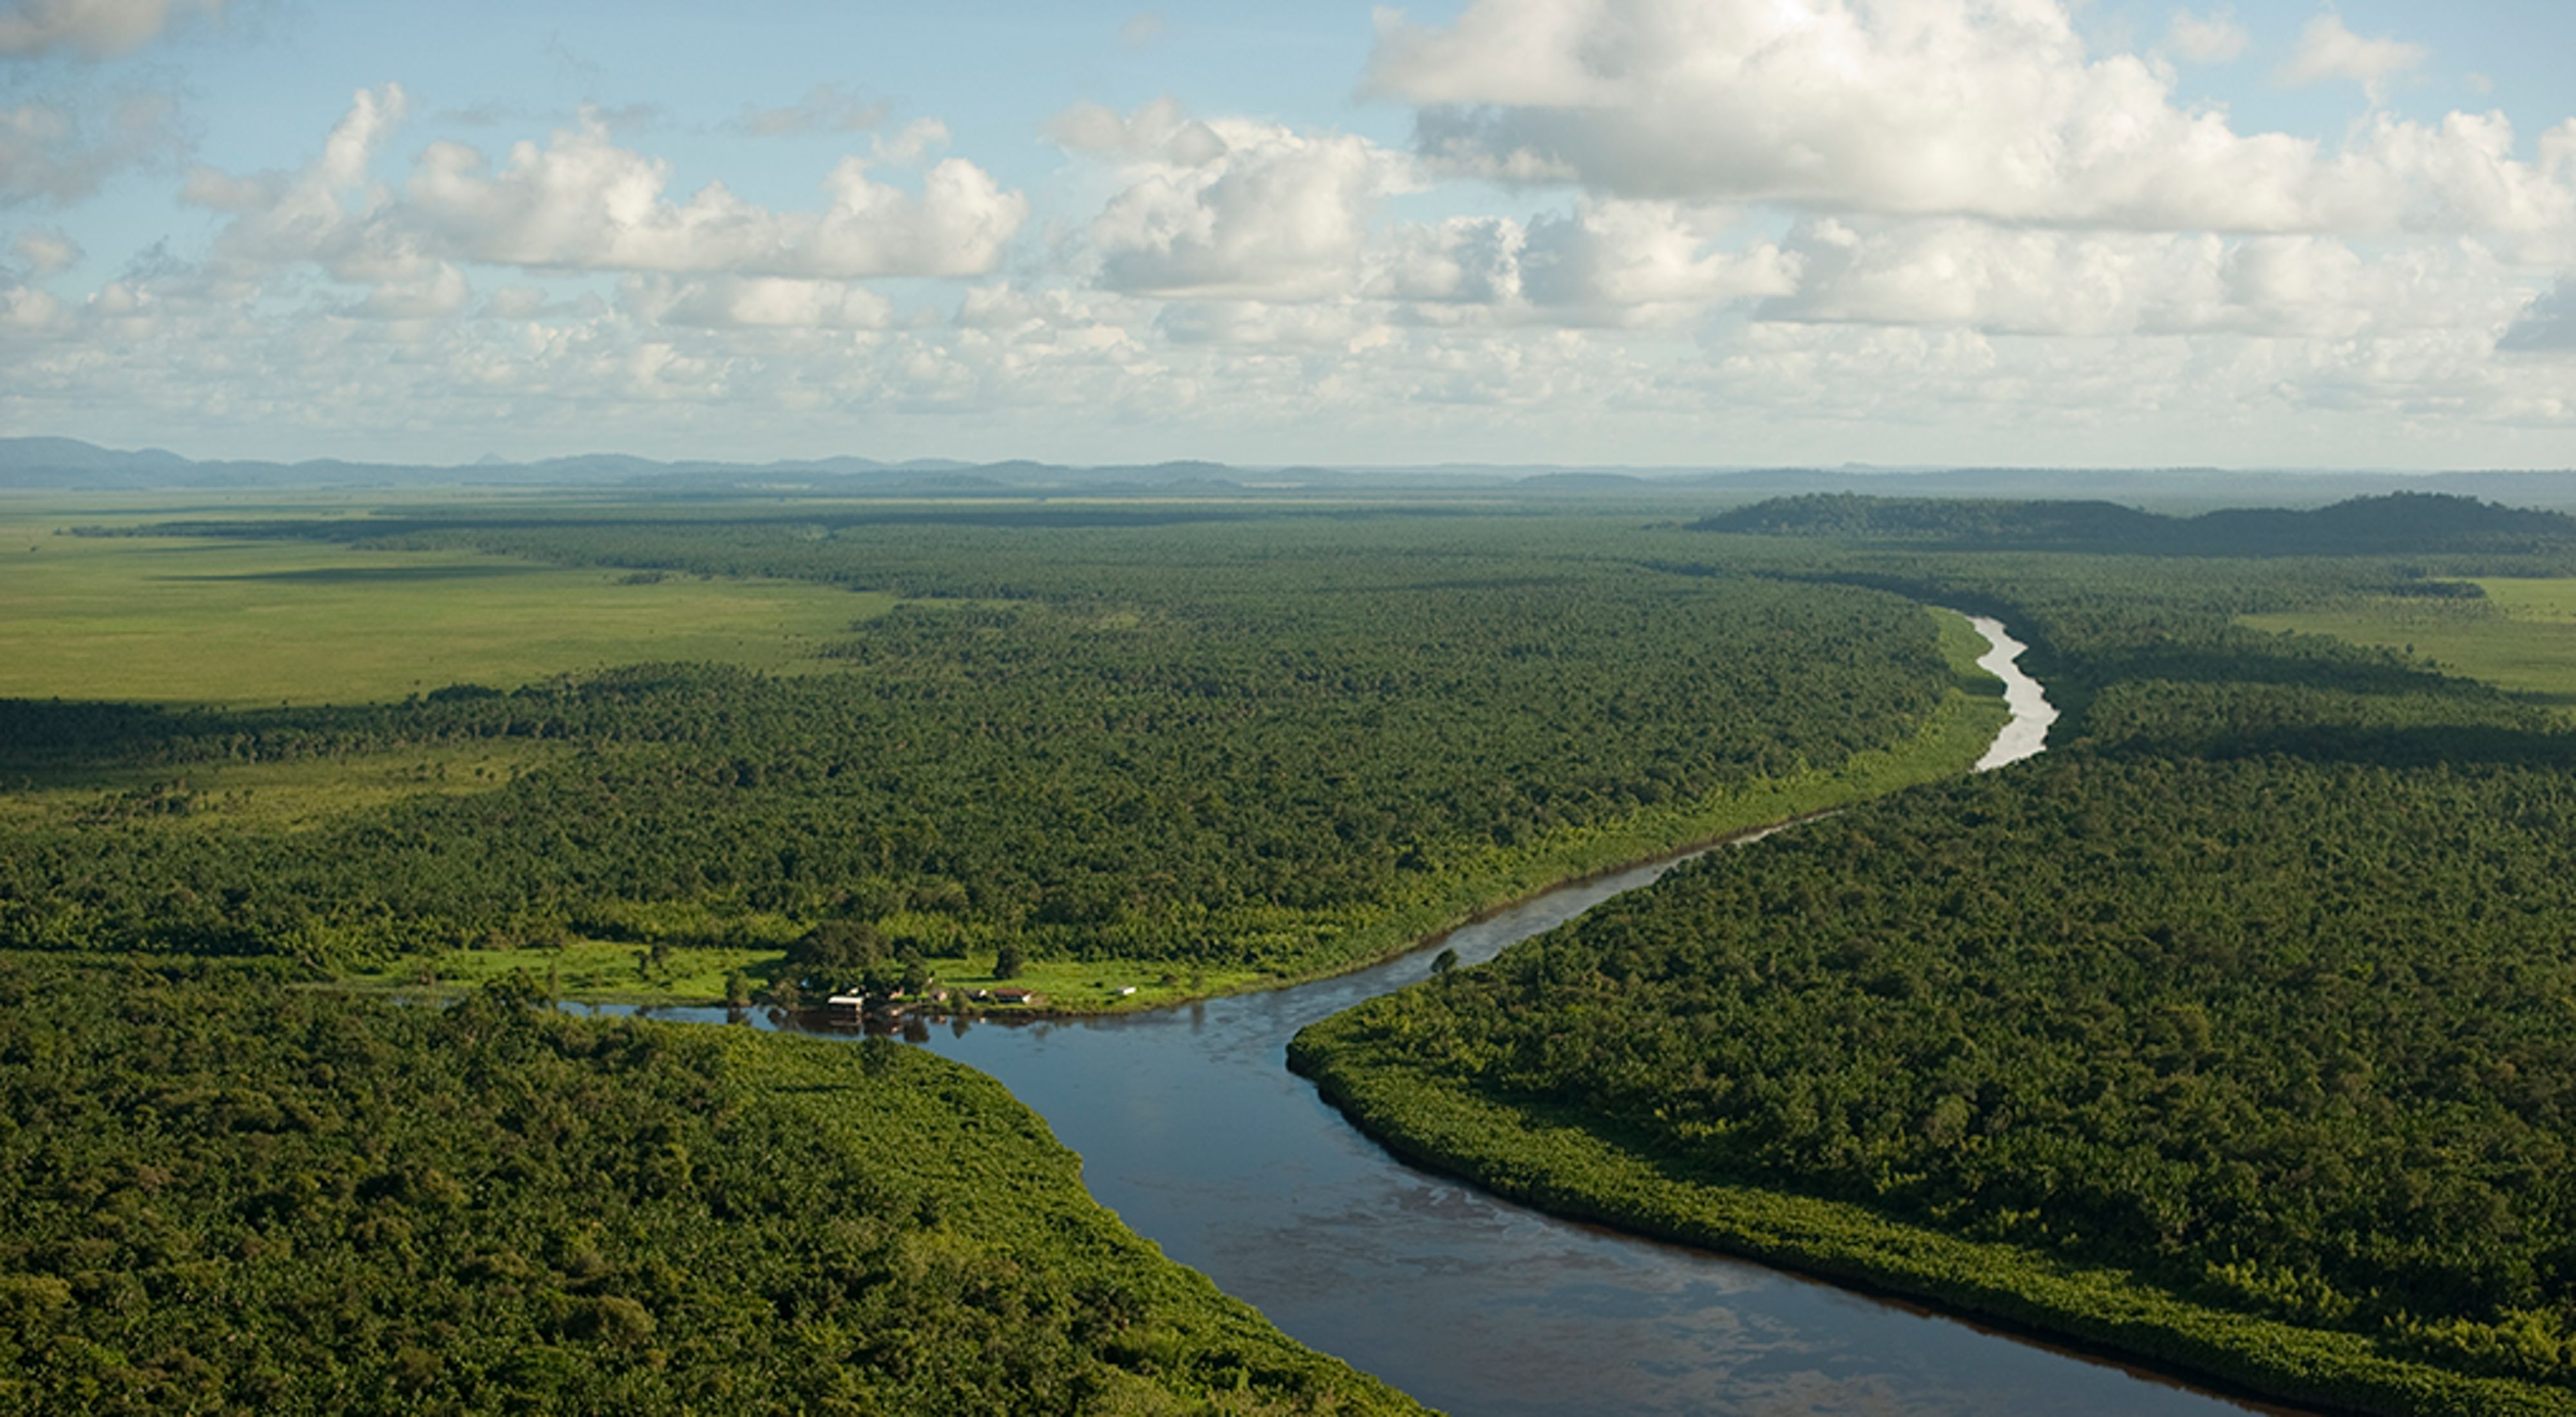  Vista aérea de Oiapoque, região indígena da Amazônia.